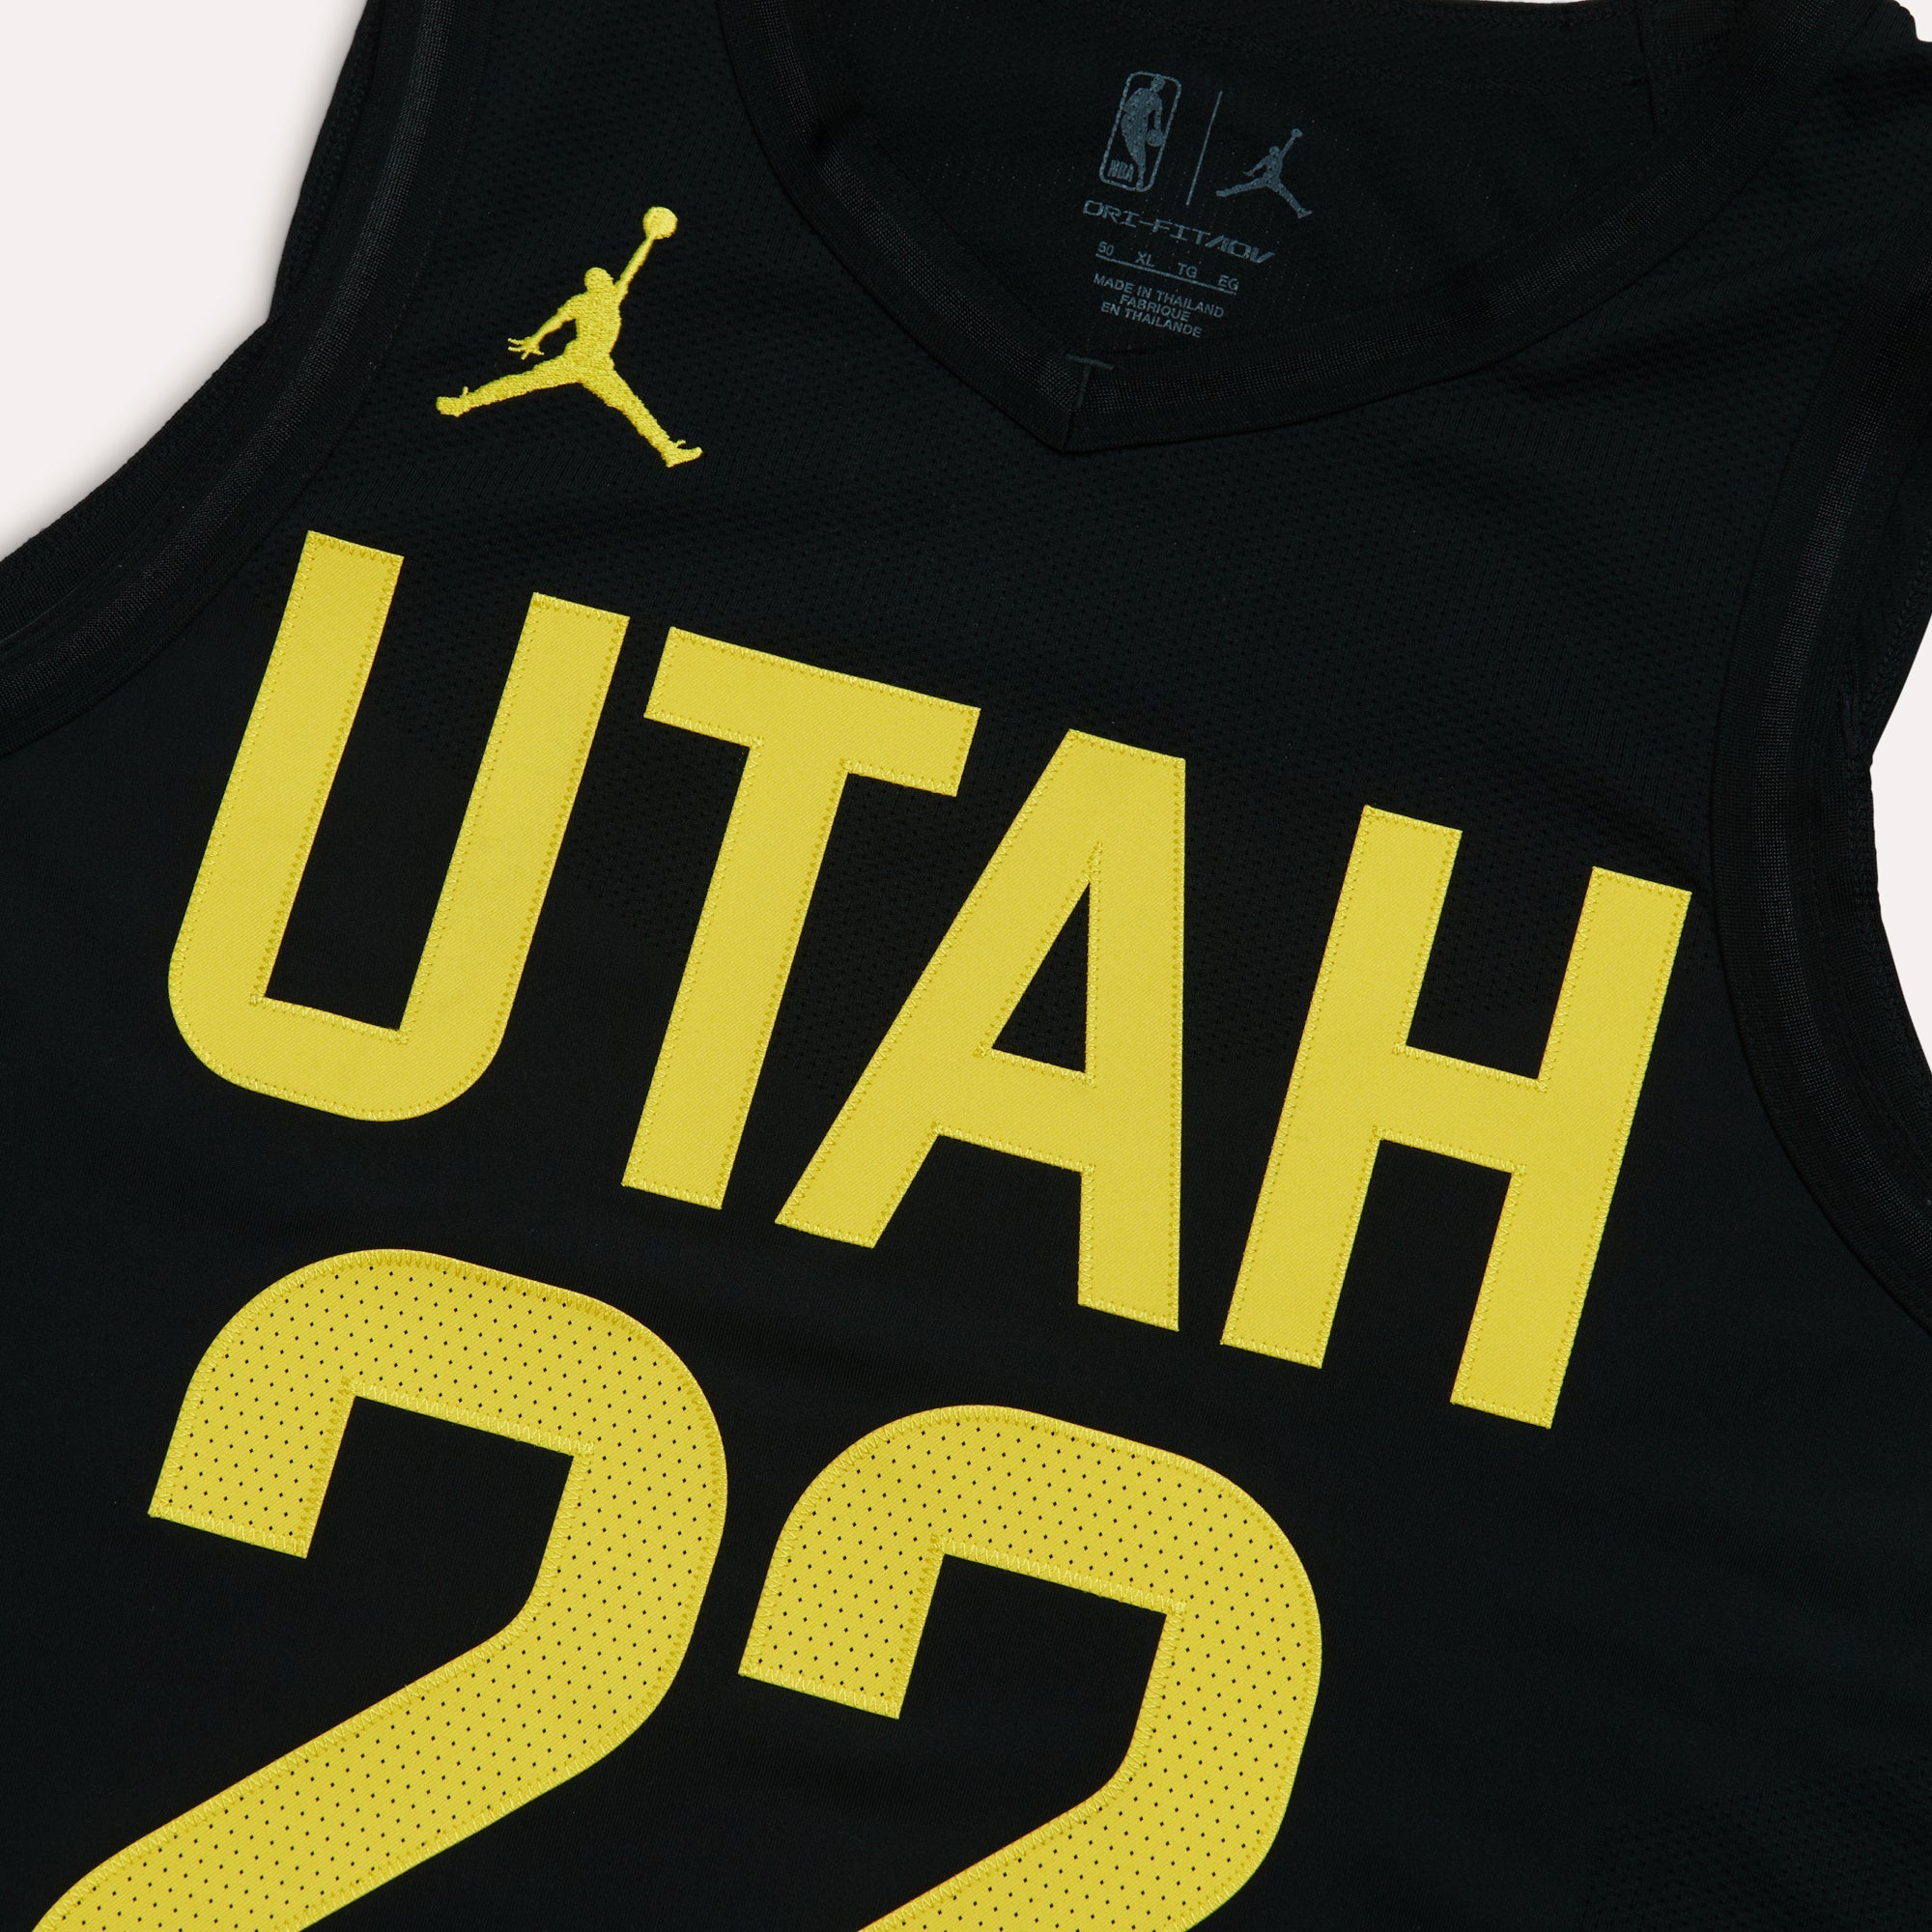 Utah Jazz Nike Association Edition Swingman Jersey 22/23 - White